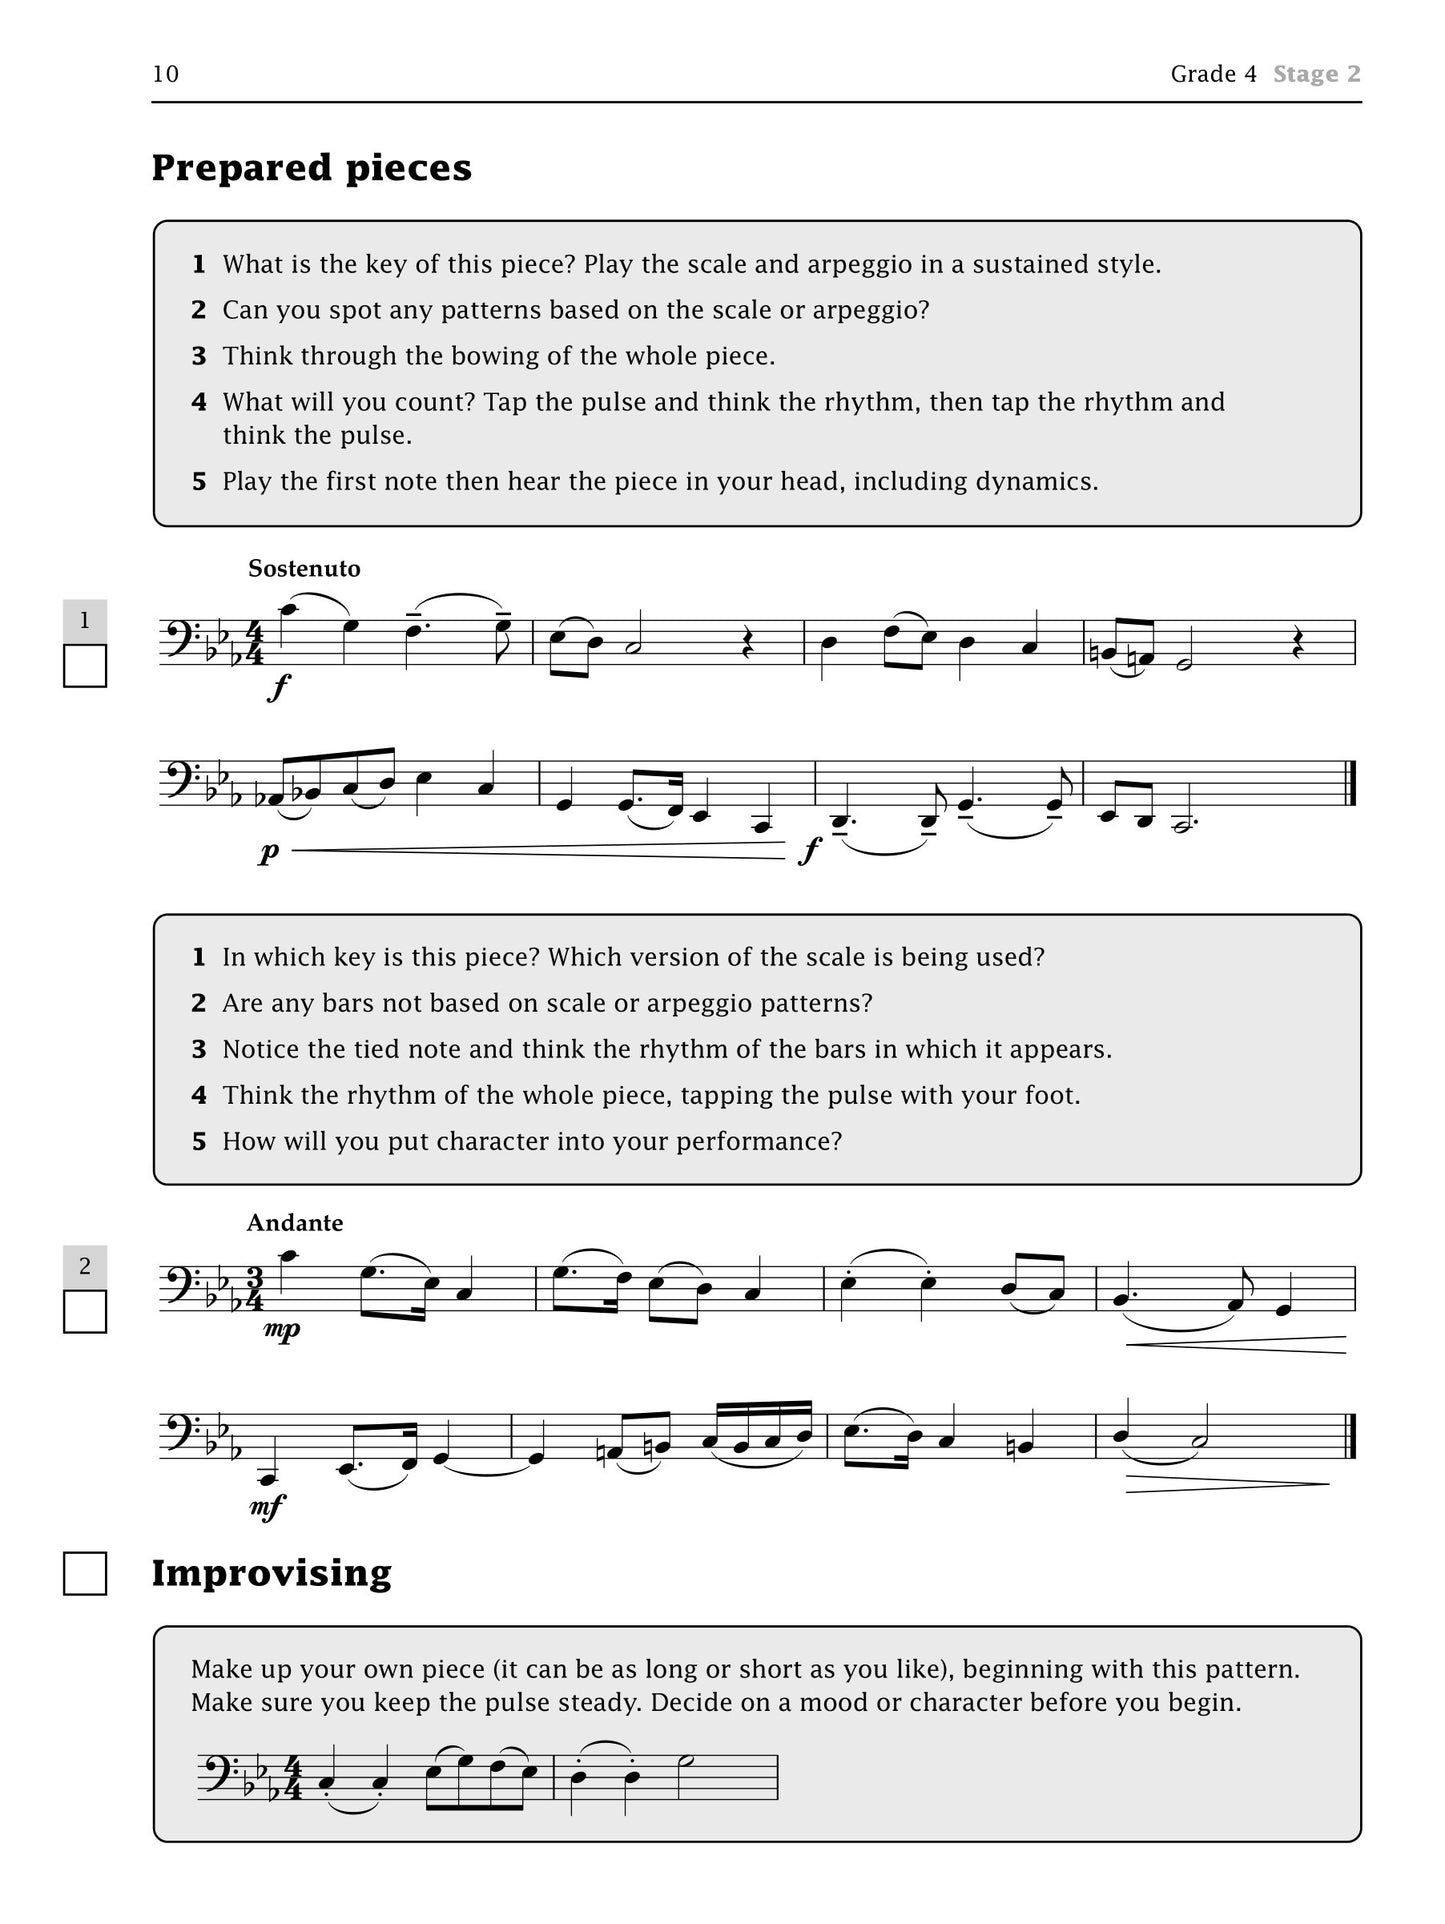 Improve Your Sight Reading - Cello Grade 4-5 Book